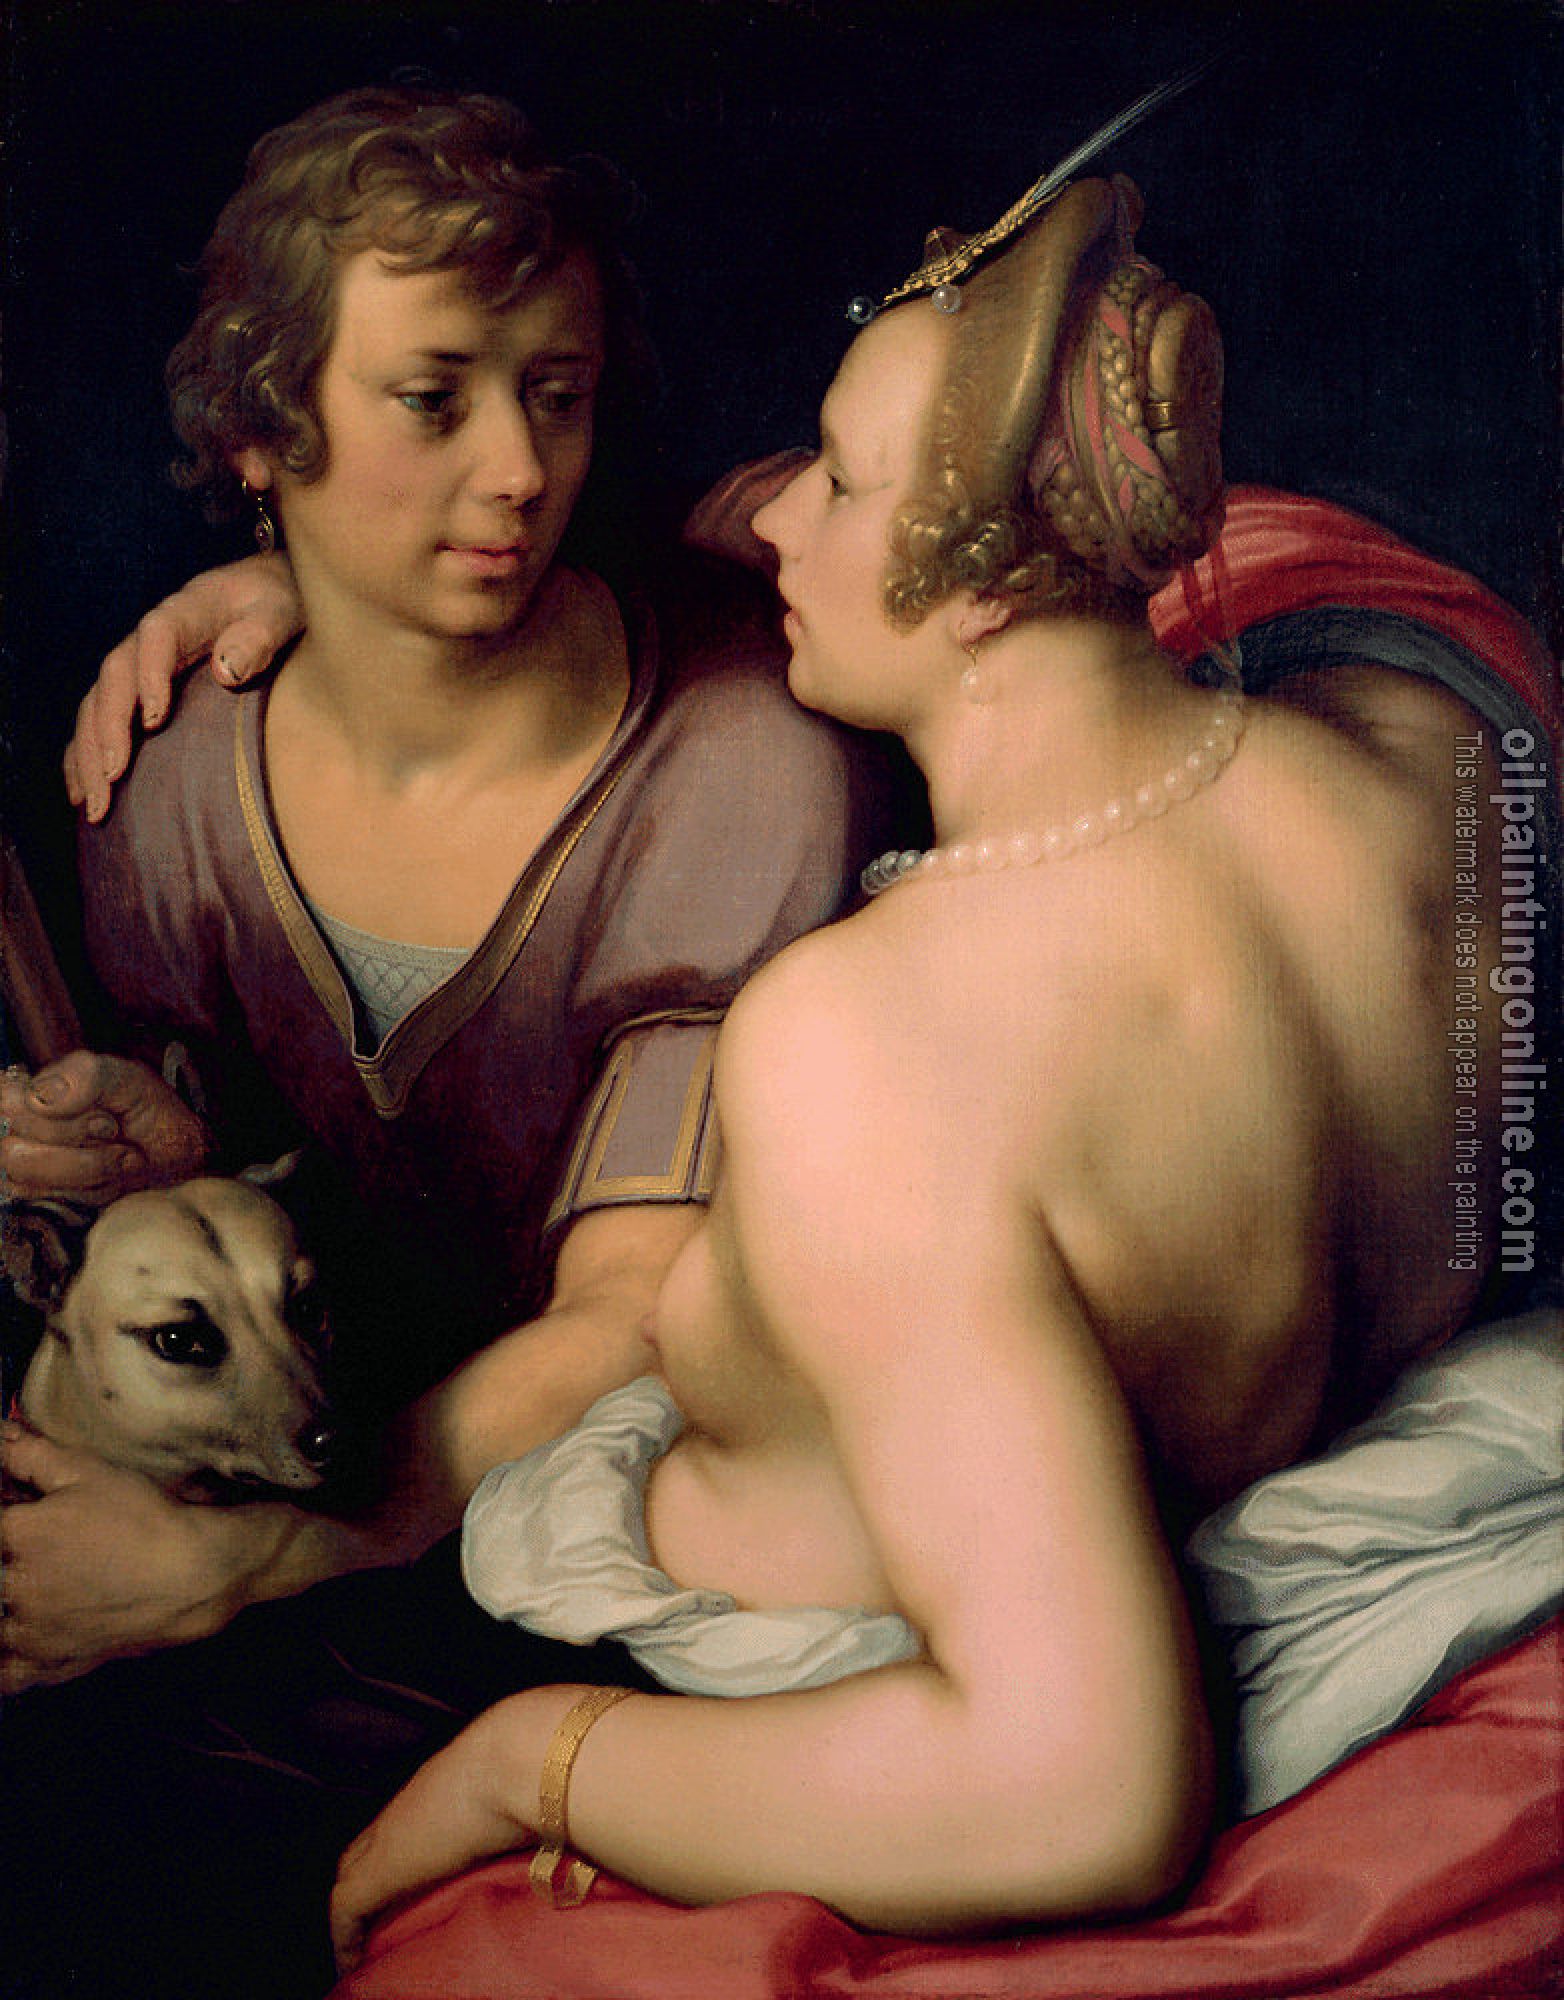 Cornelis van Haarlem - Venus and Adonis